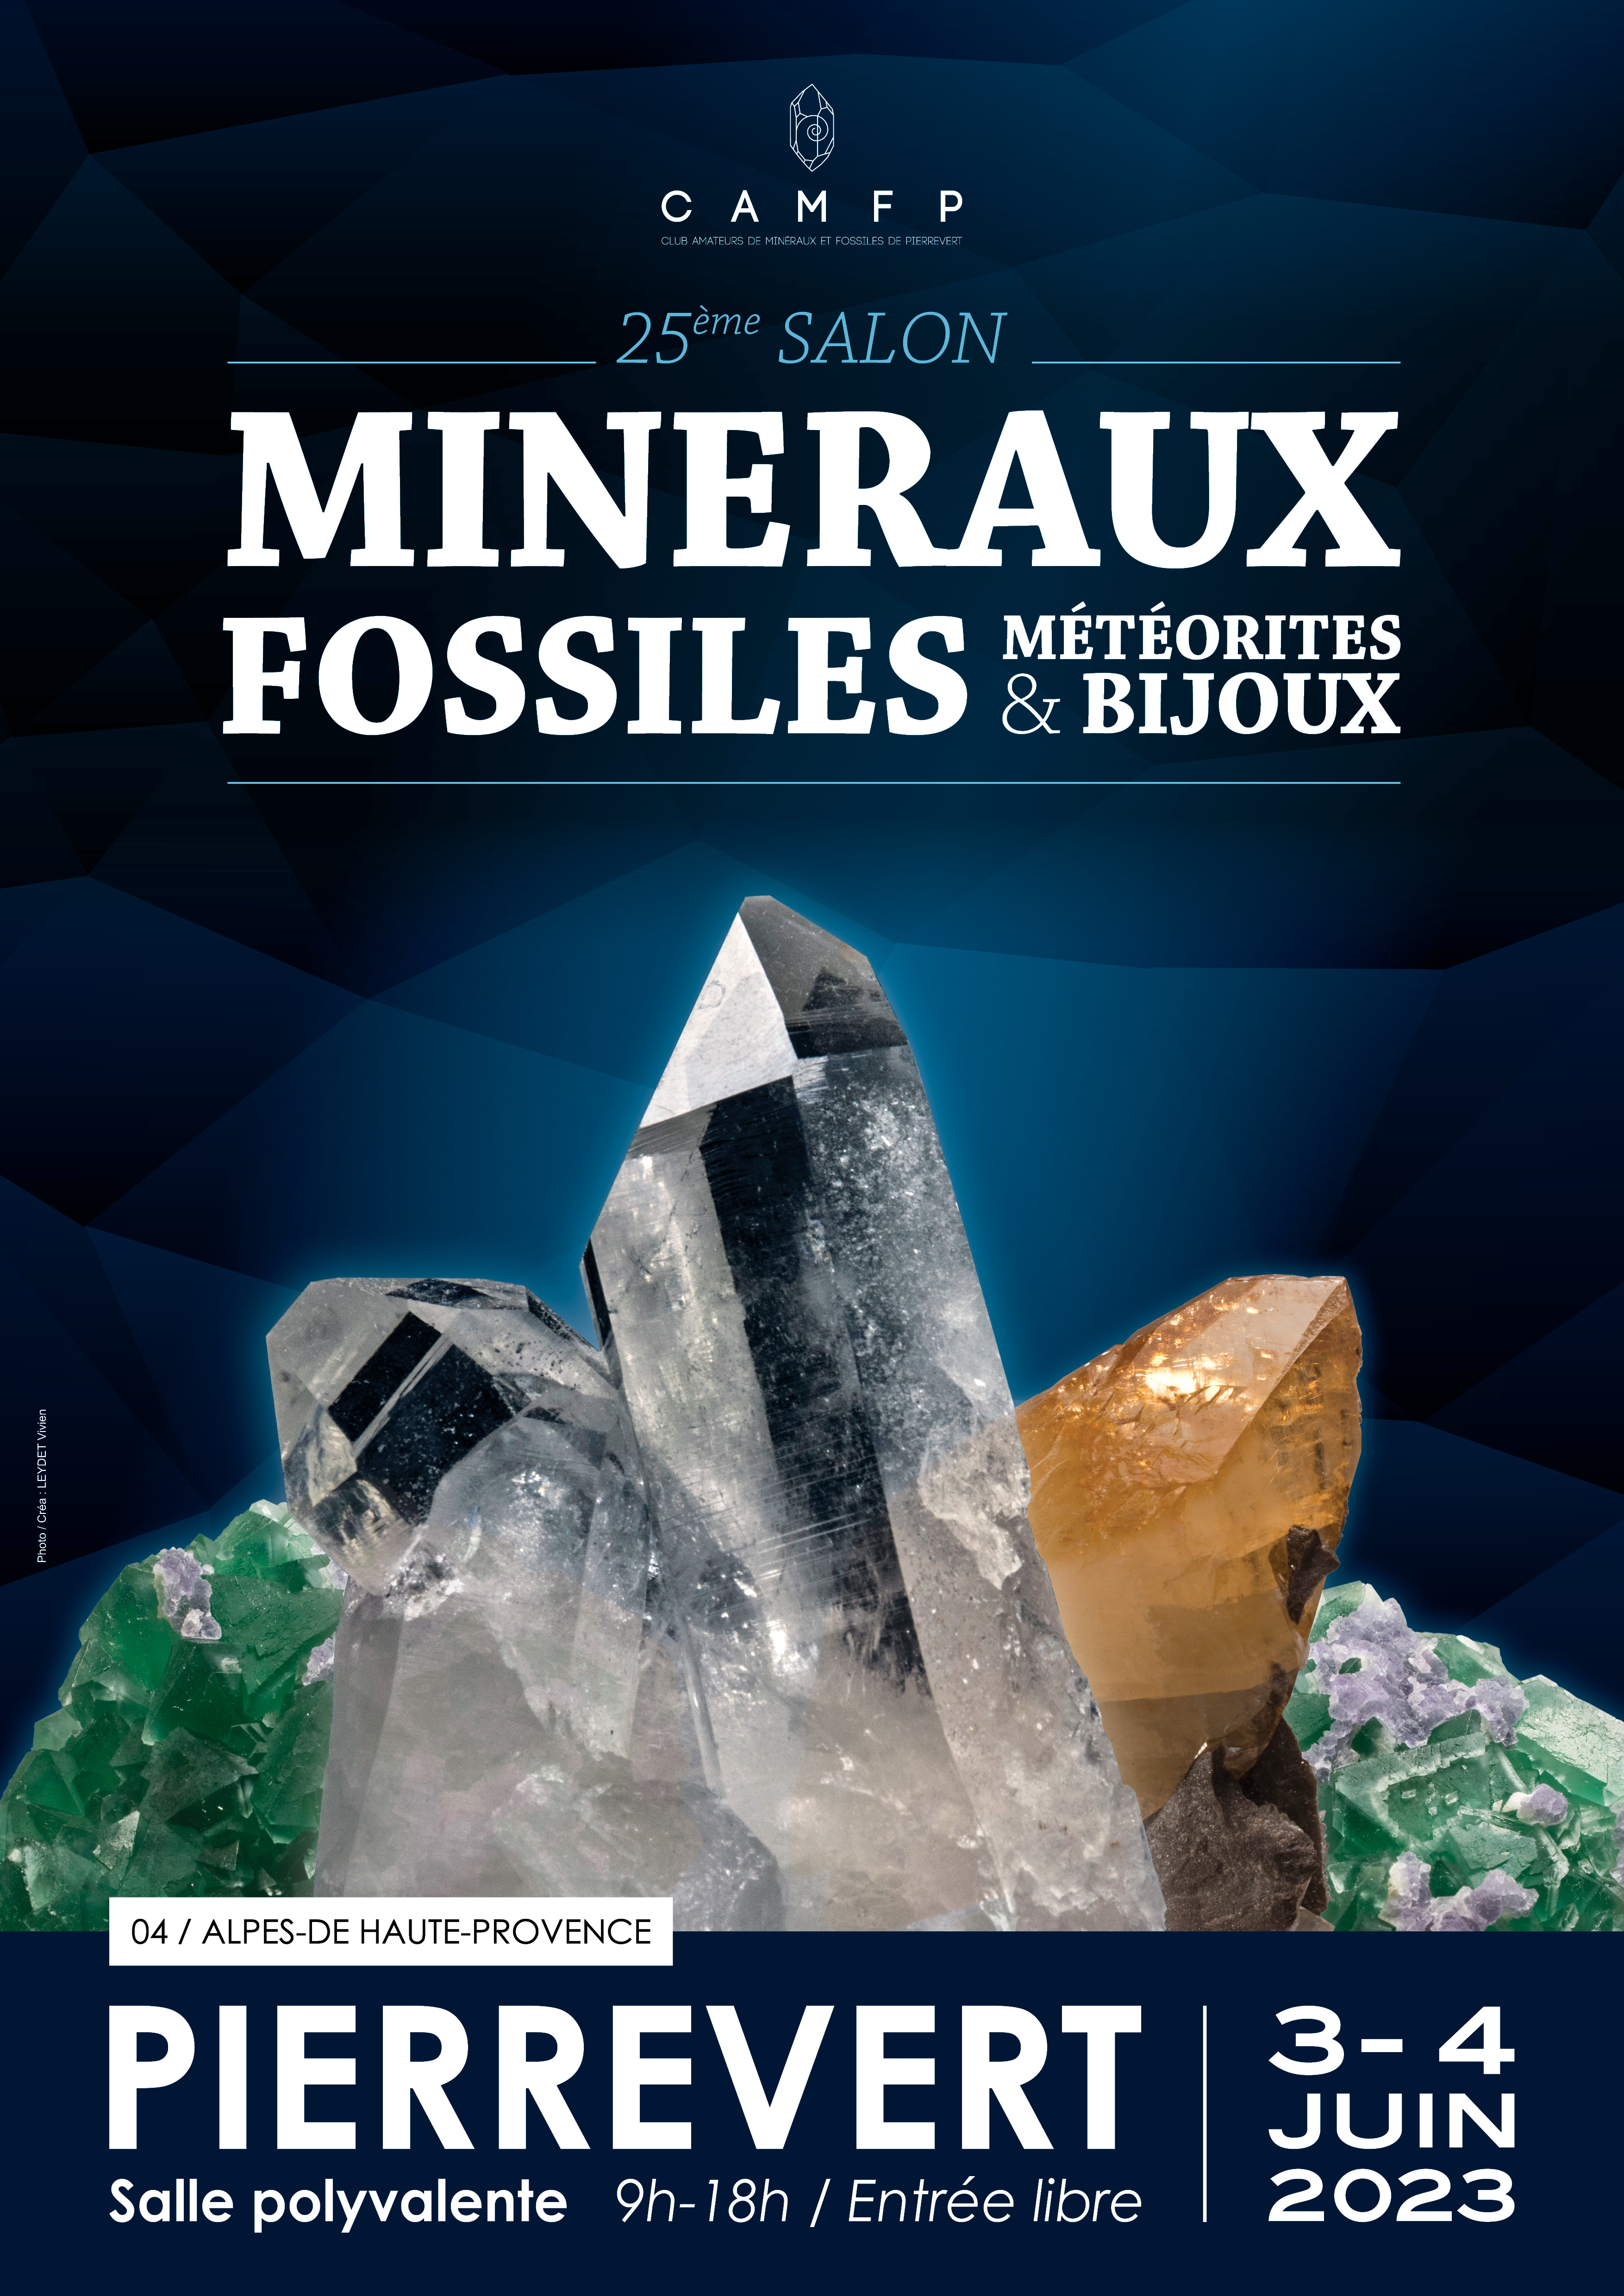 25e salon des Minéraux, Fossiles et Bijoux les 3 et 4 juin à Pierrevert